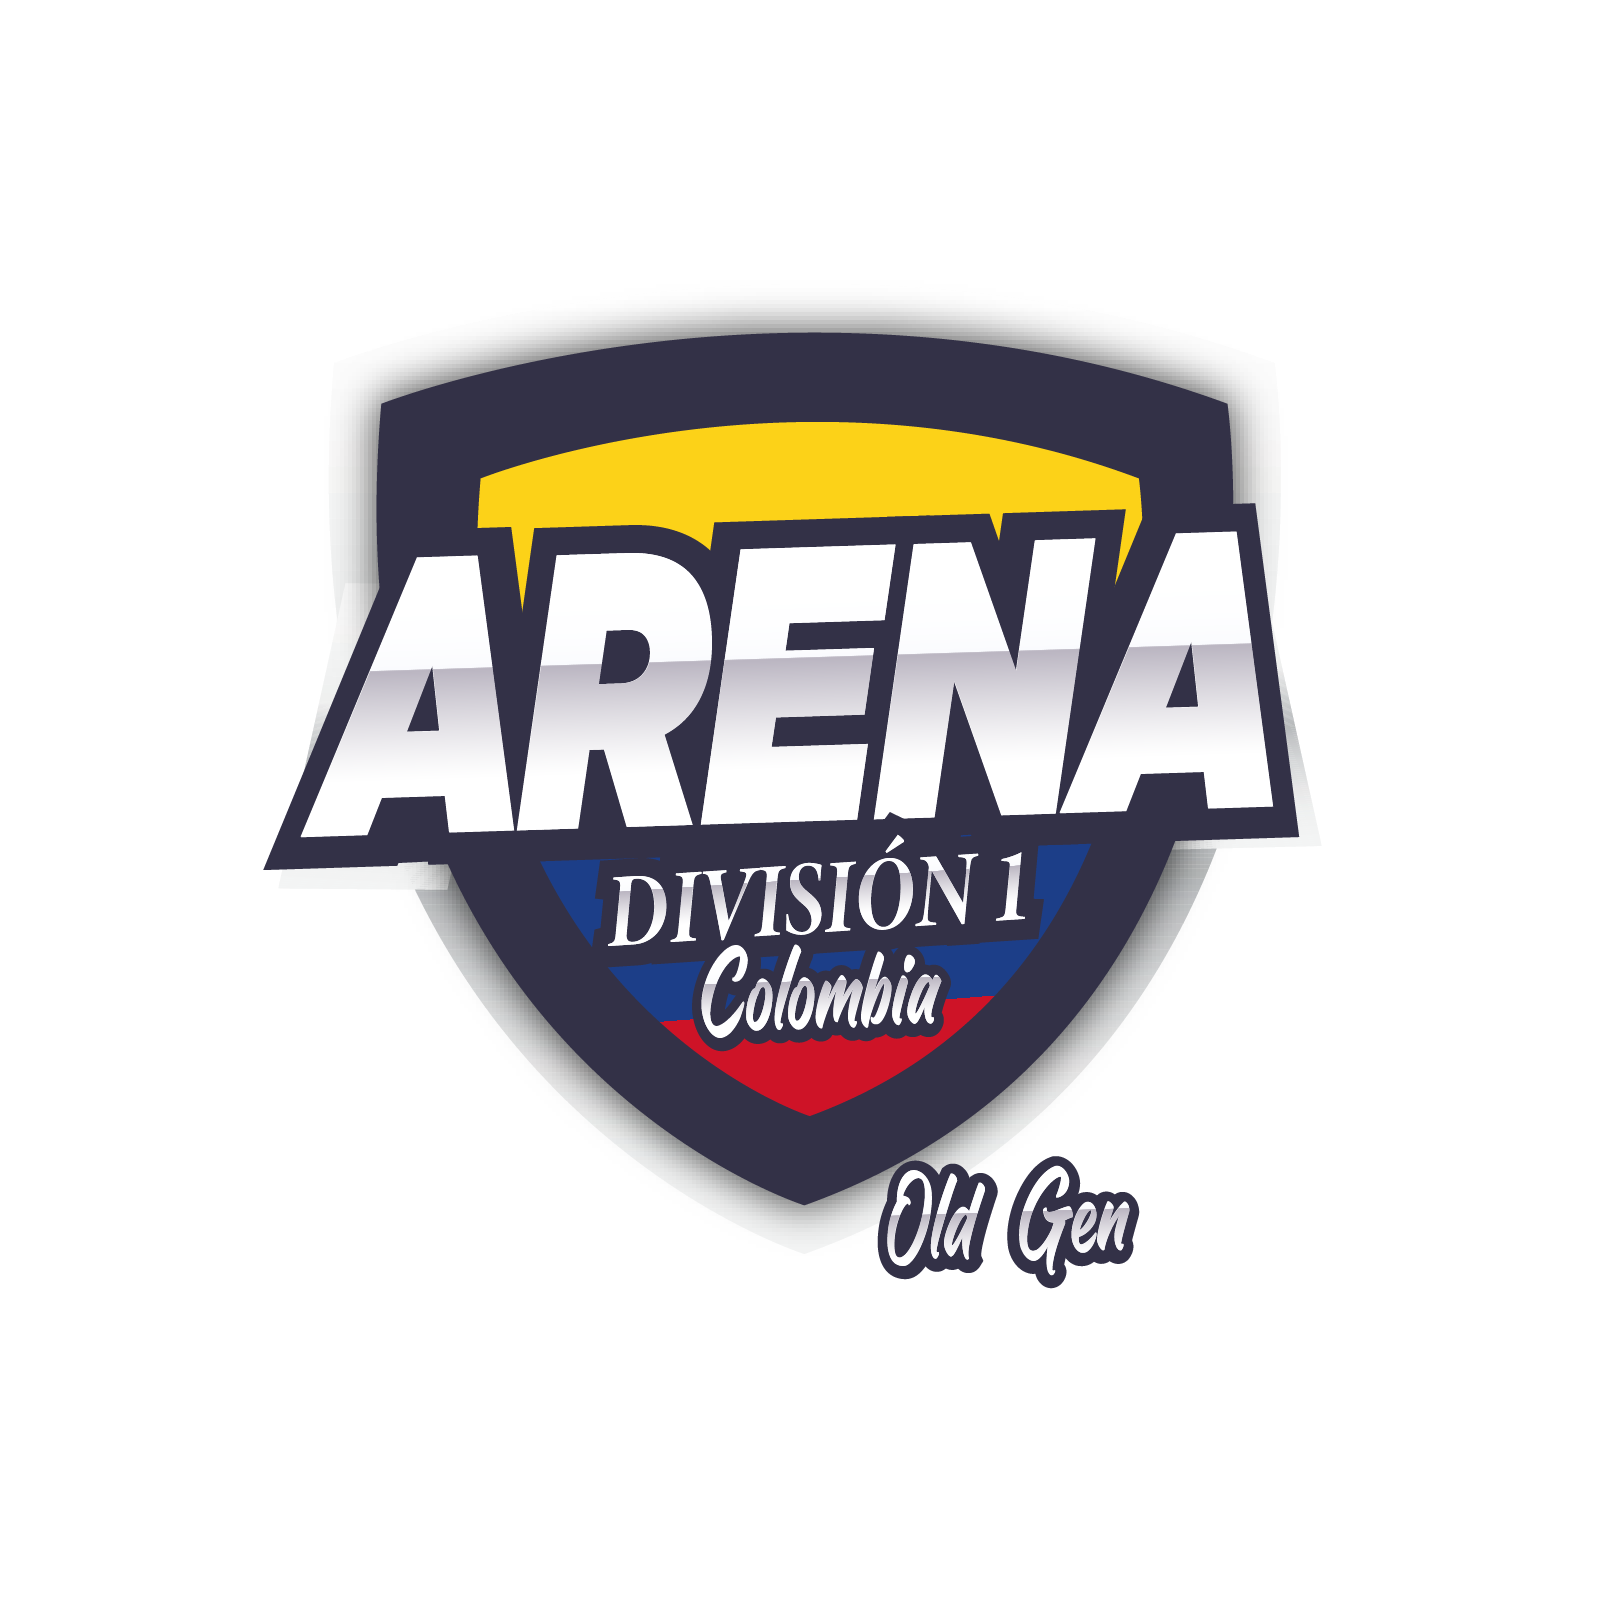 ARENA Colombia OLD División 1